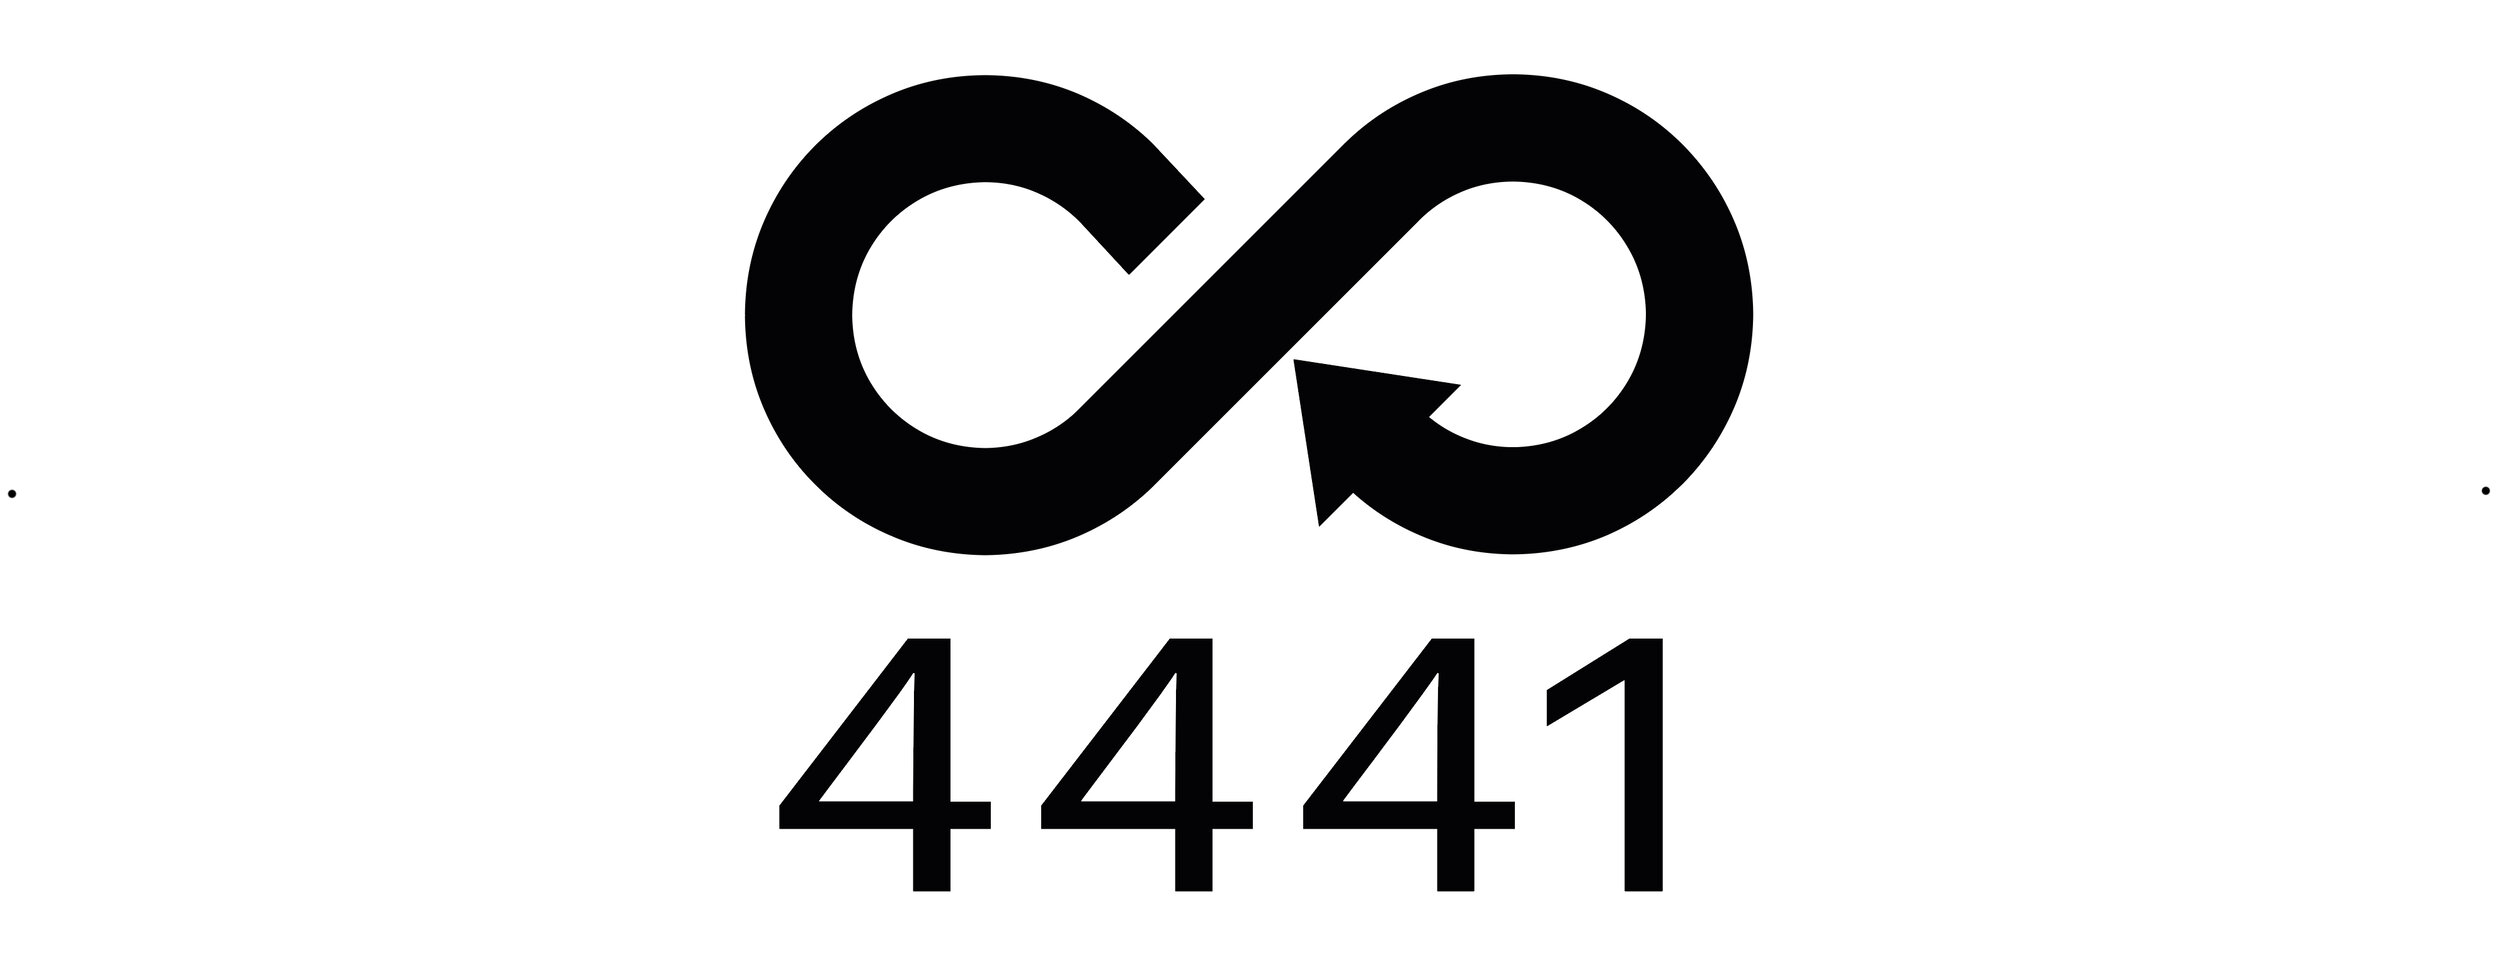 Diese "4441-Kennzeichnung" symbolisiert den Wert, den wir der Recyclingarbeit beimessen.